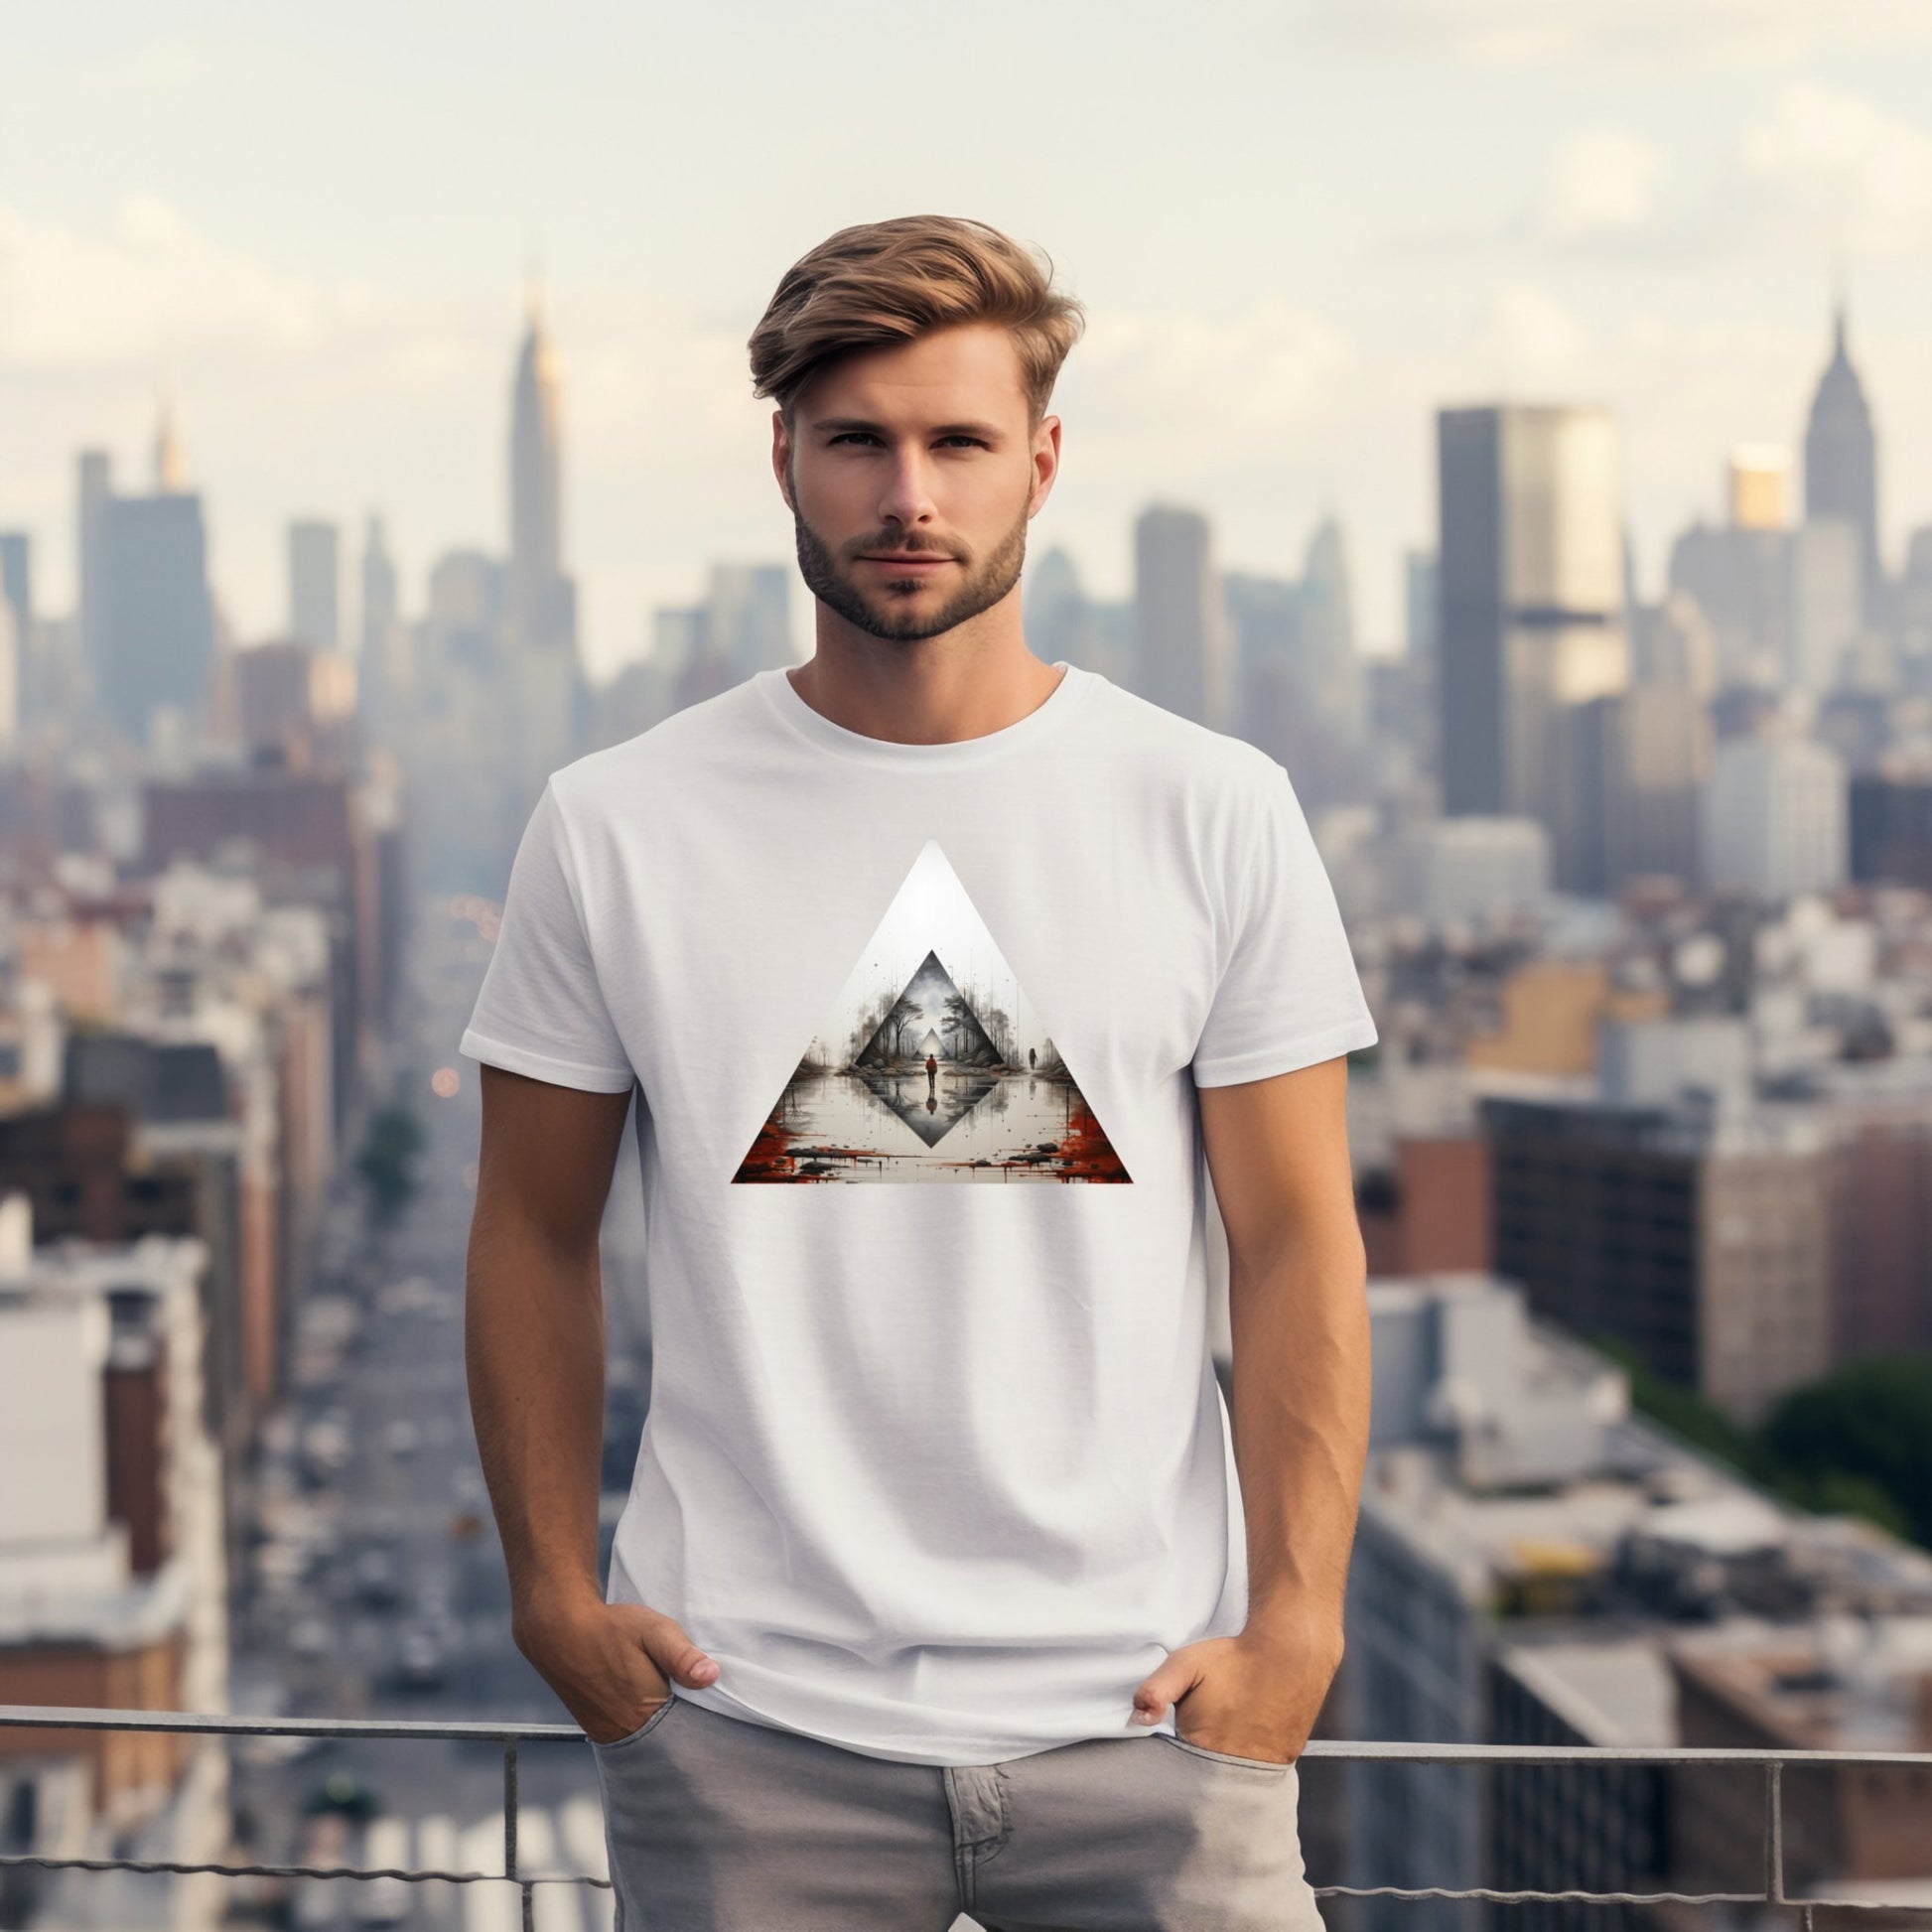 Mystic Pyramid - DesignedByMe.lt - 